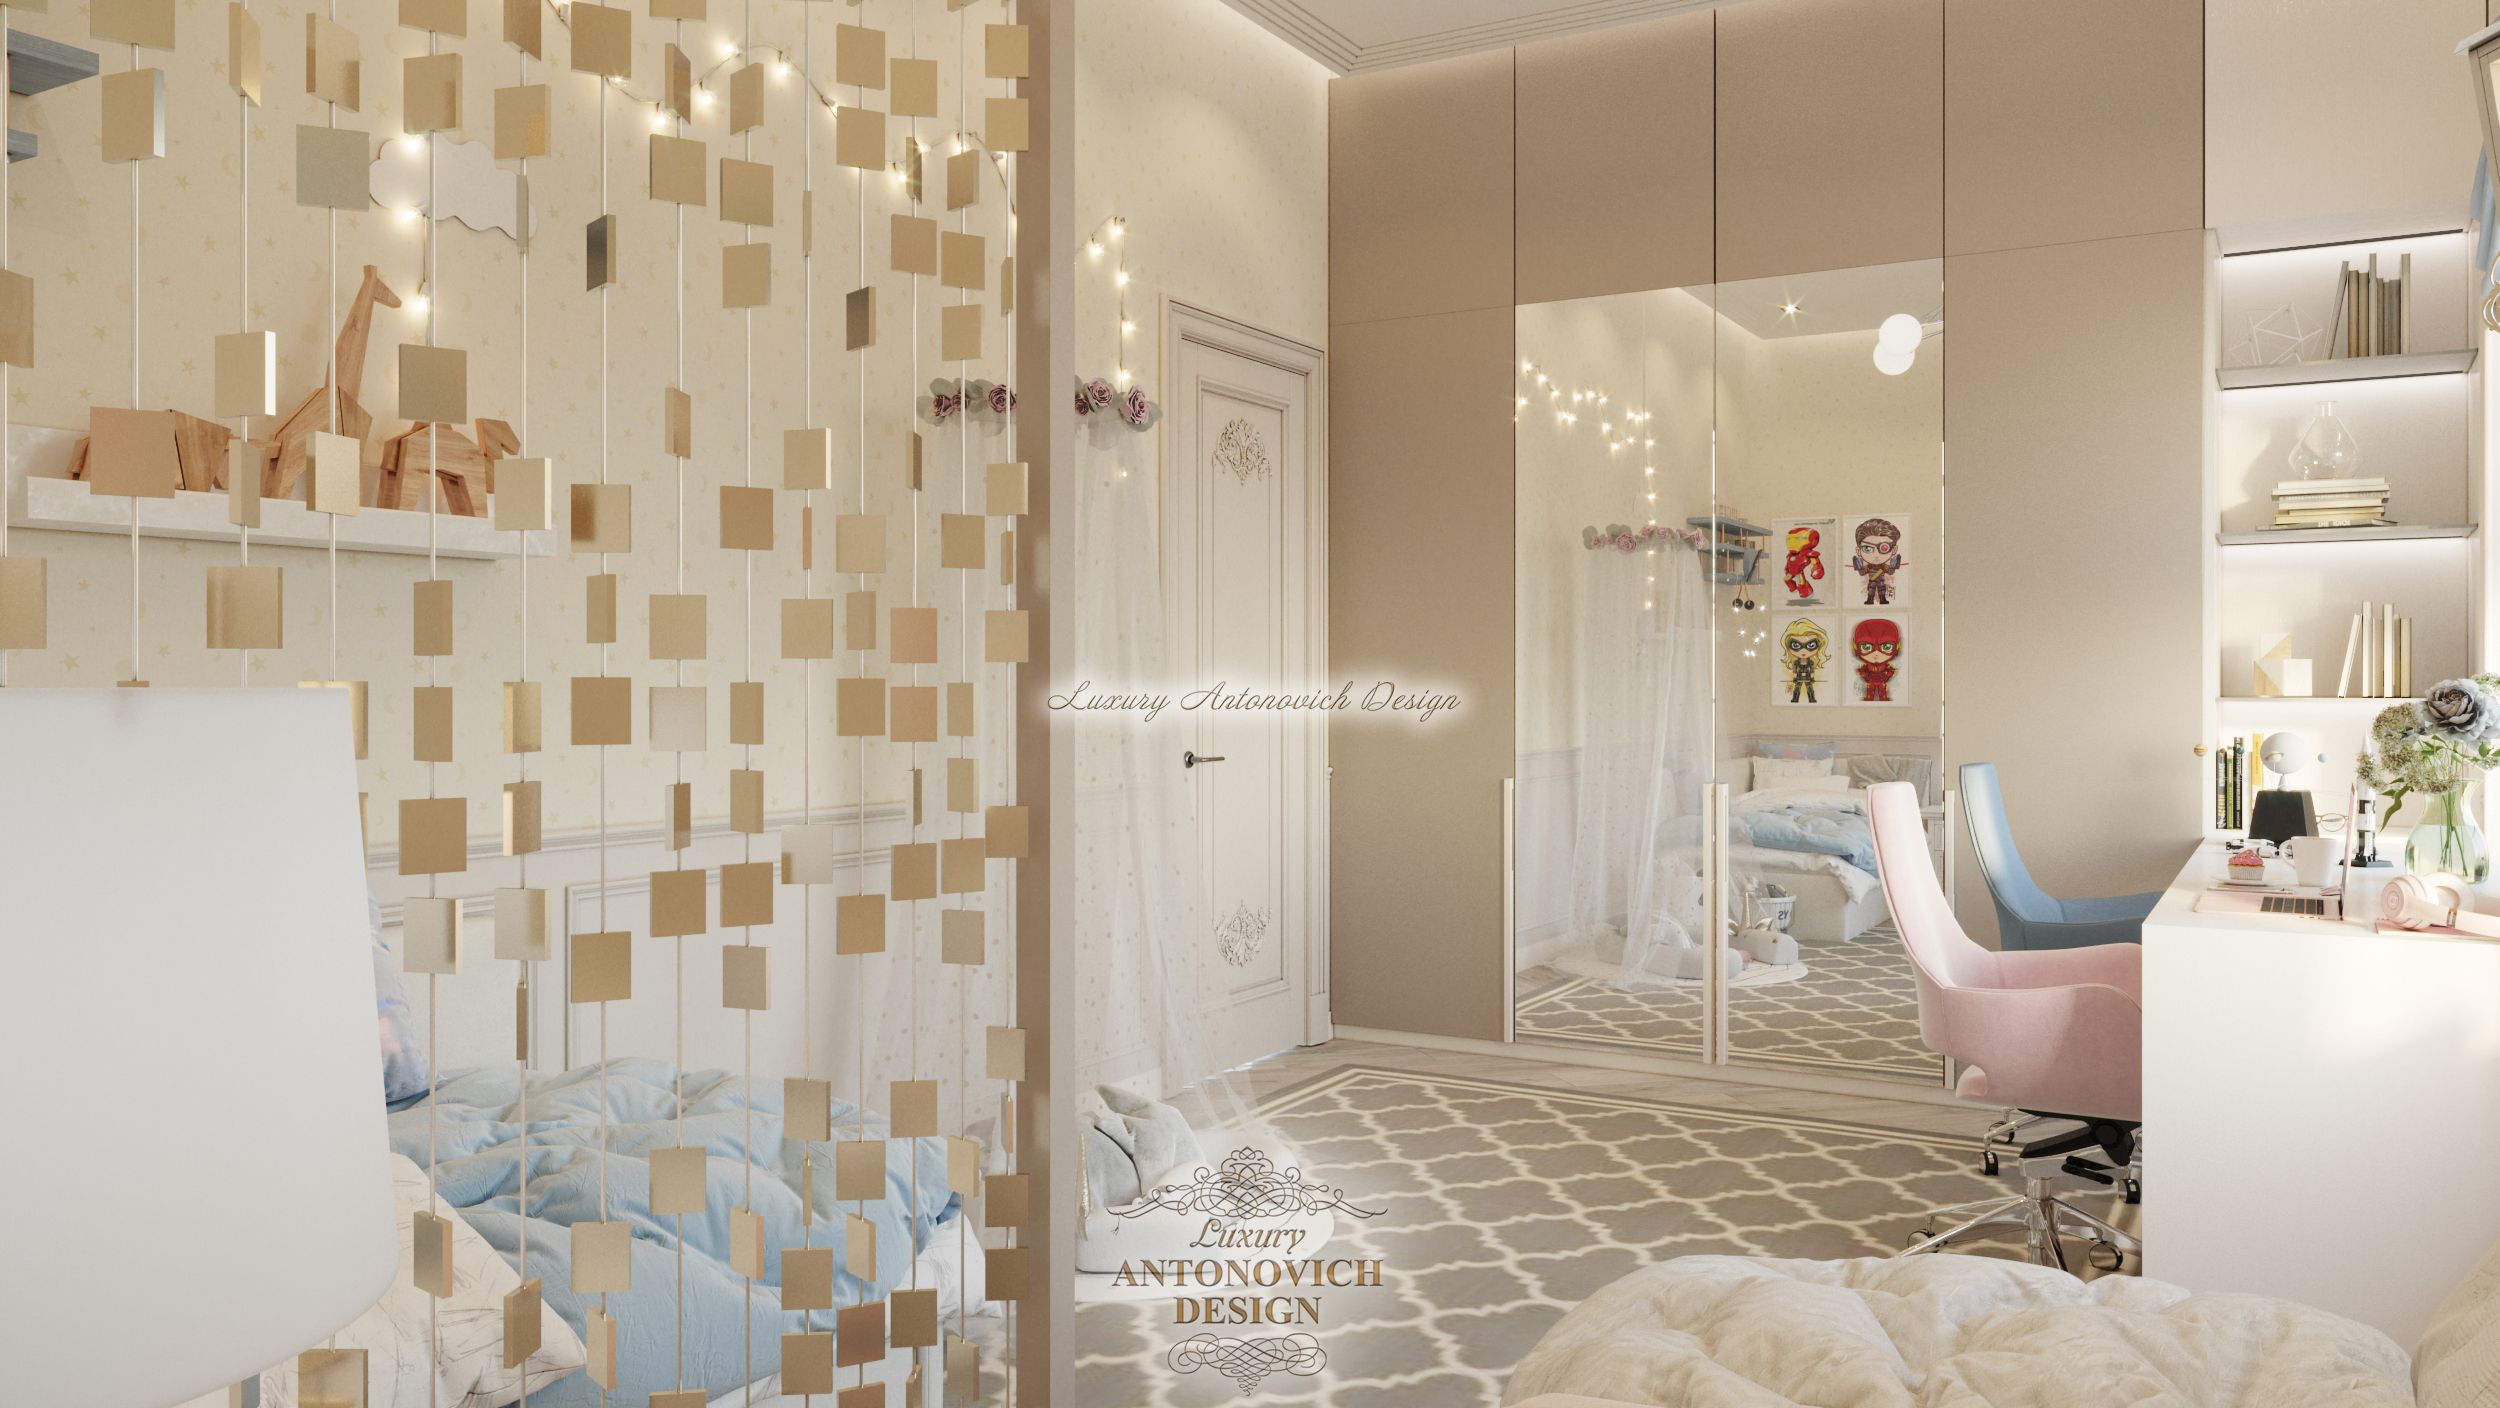 Элегантный интерьер Детская спальня (7) квартира в Праге, Antonovych Design